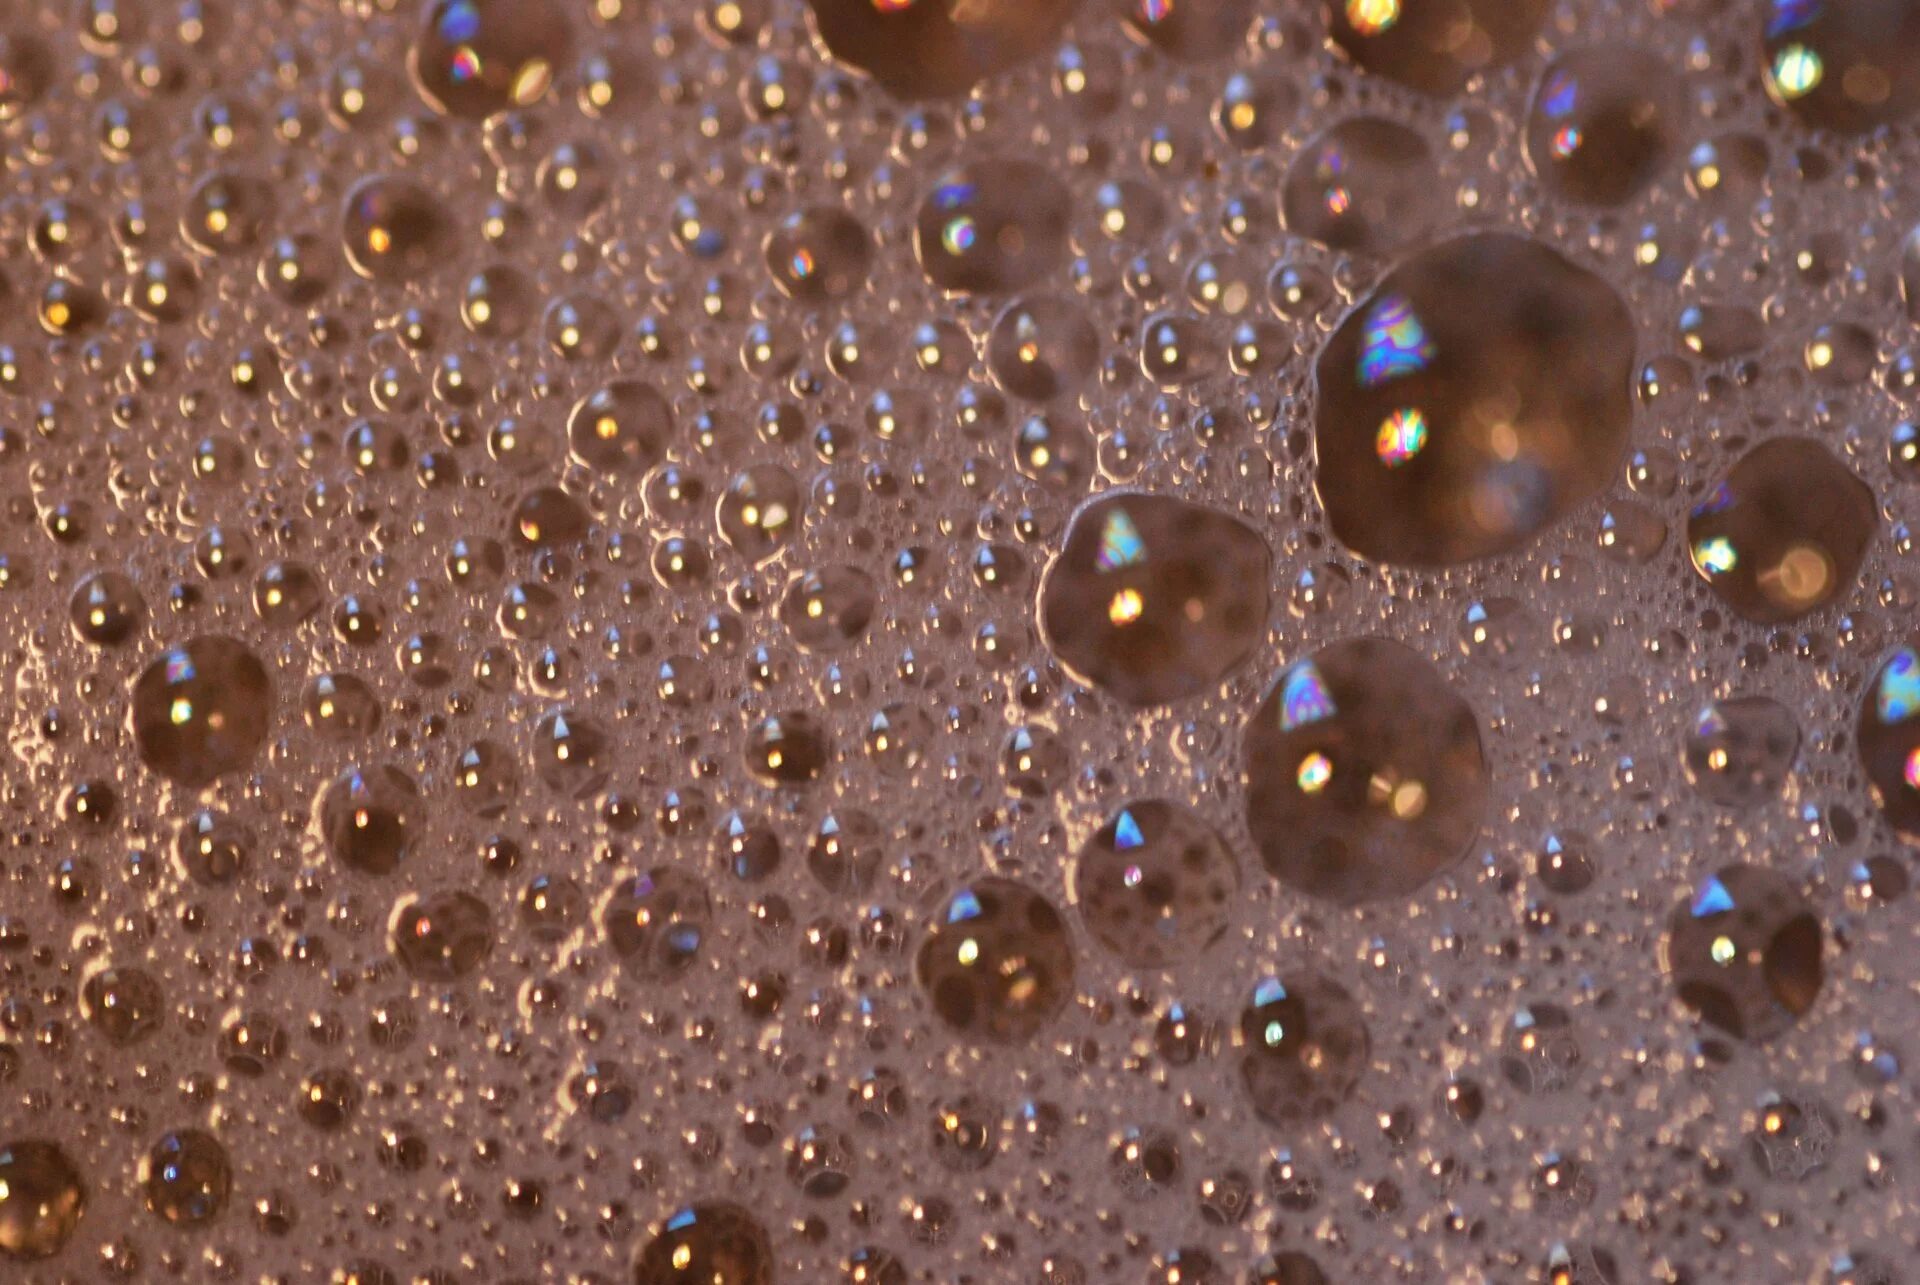 Ткань пузырьки. Пузырьки в воде. Пузырьки текстура. Блестящая поверхность. Мыльные пузыри.